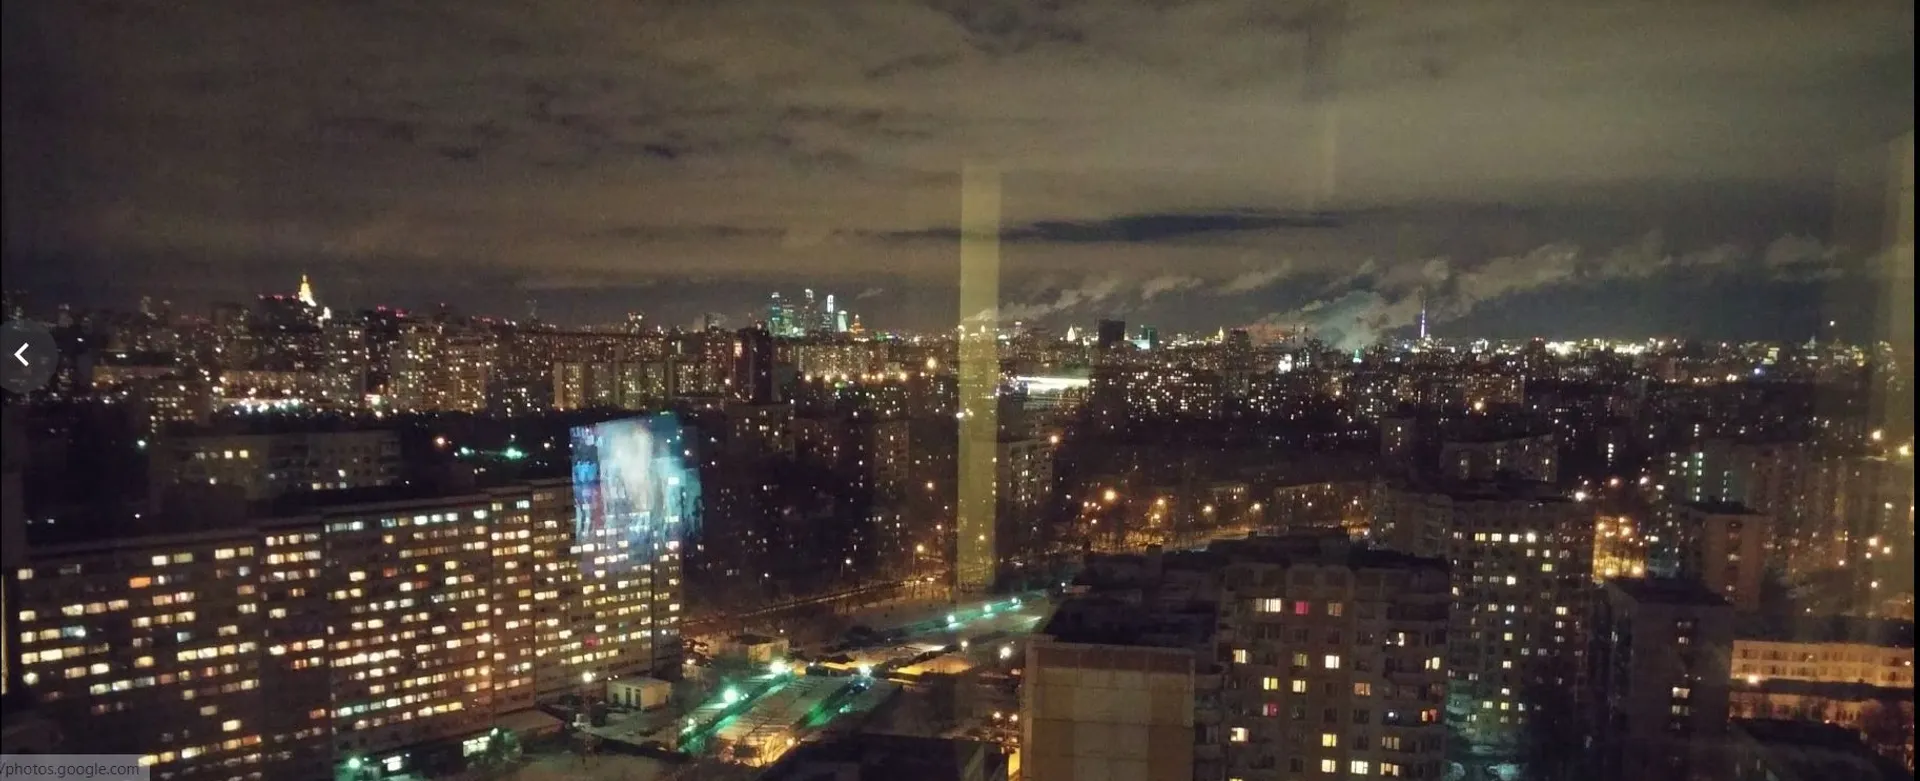 Вечерний панорамный вид на Москву